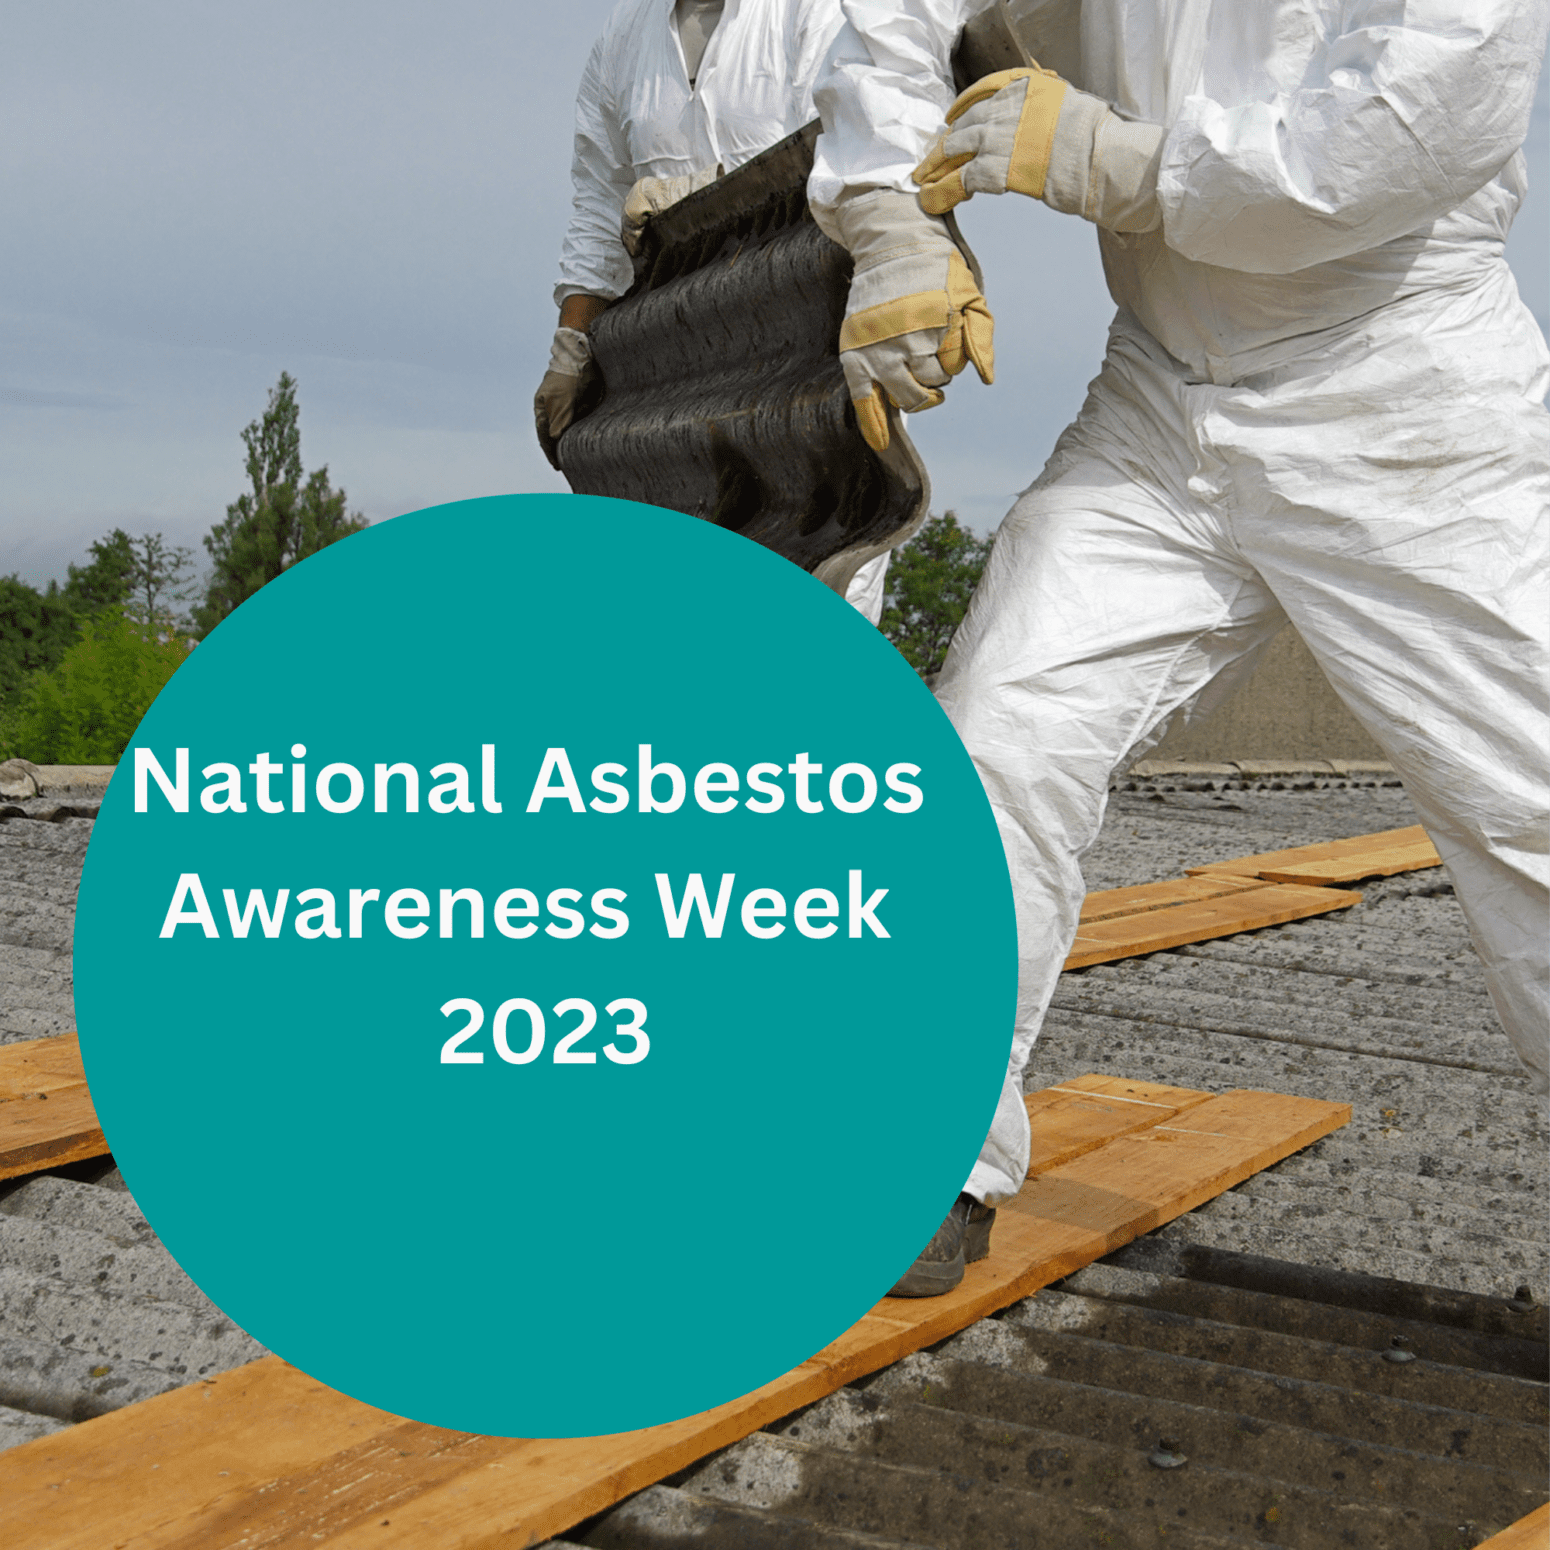 National Asbestos Awareness Week 2023